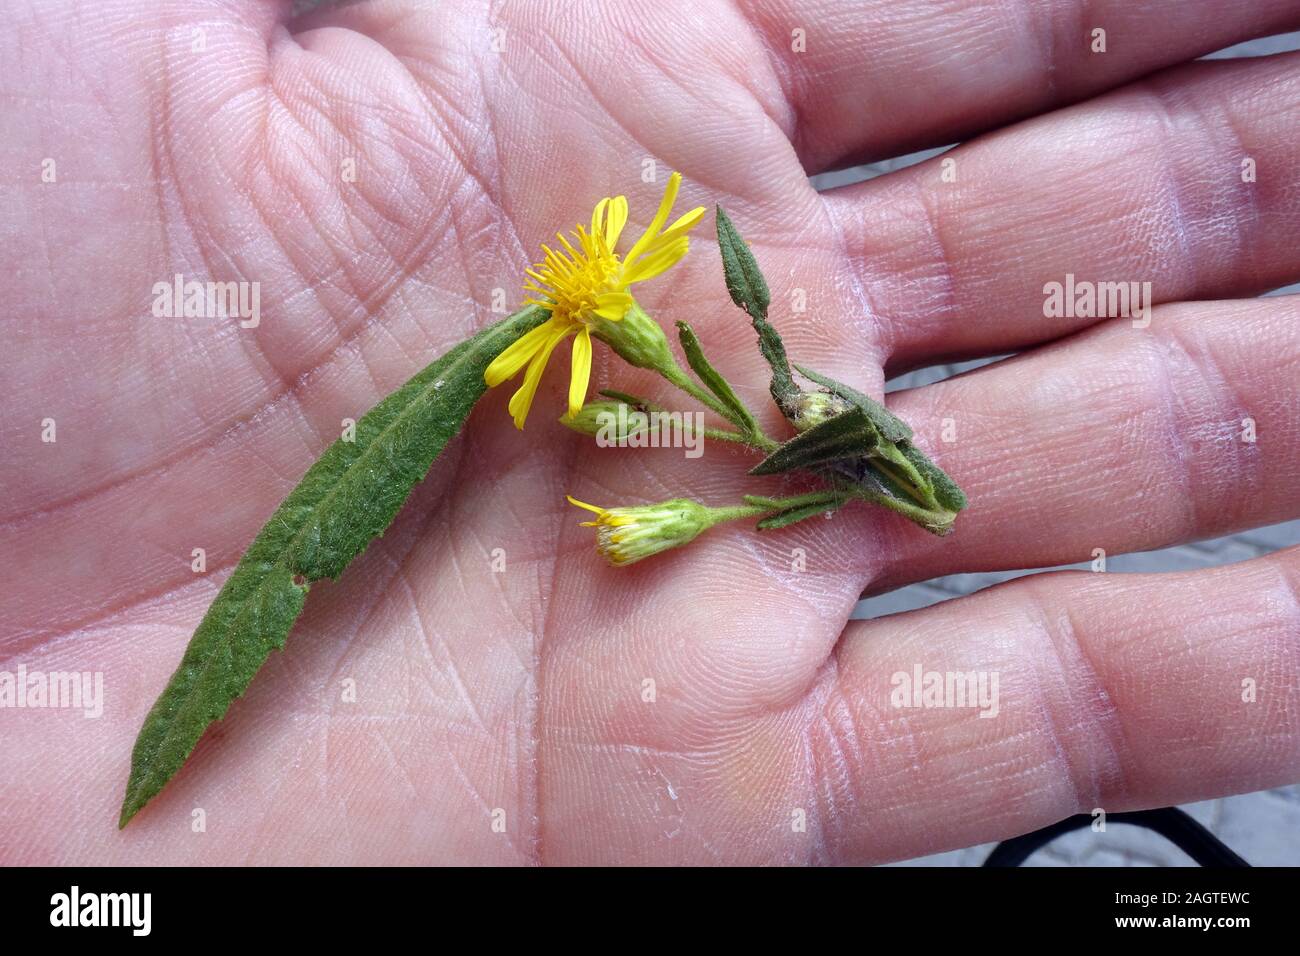 Breitblättrige Klebalant Dittrichia viscosa (subsp. angustifolia) - Blatt und Blüte auf der Handfläche, Bafra France Republik Nordzypern Banque D'Images